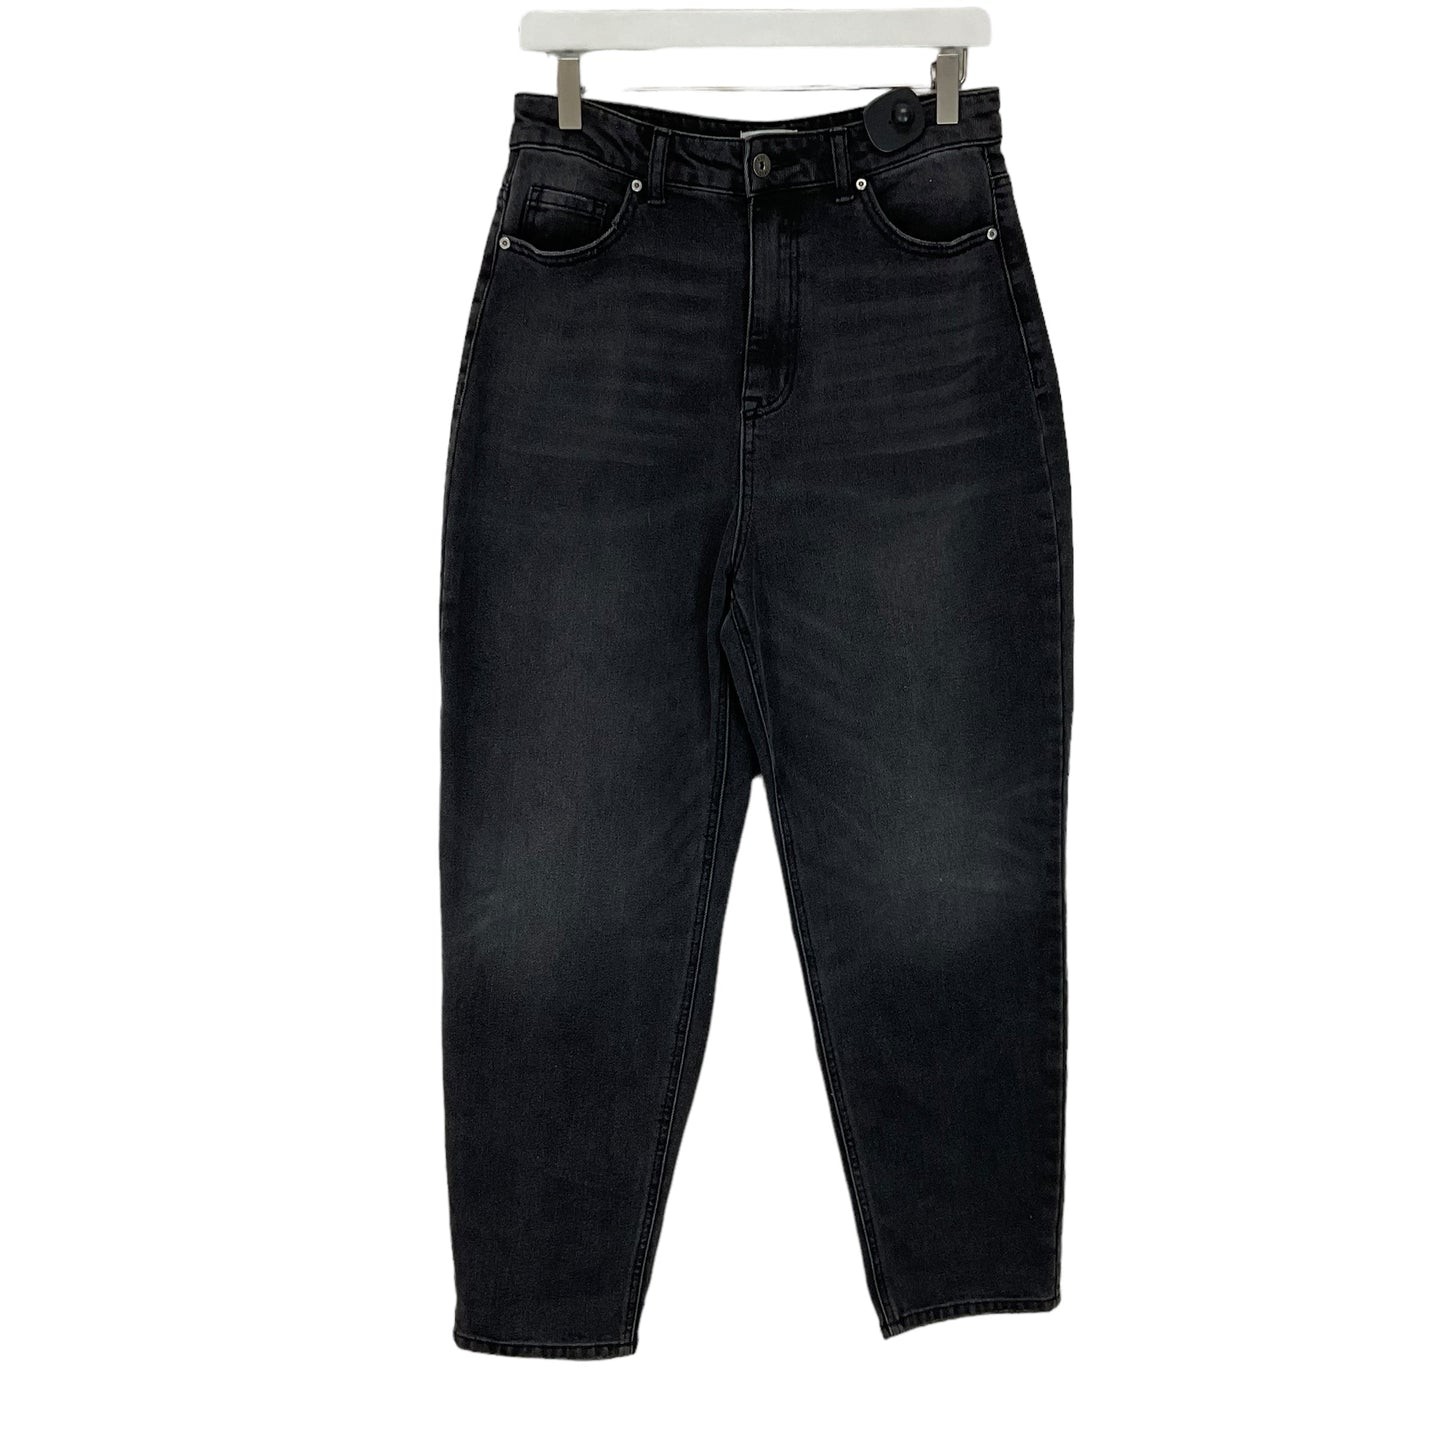 Black Denim Jeans Boot Cut True Craft, Size 11